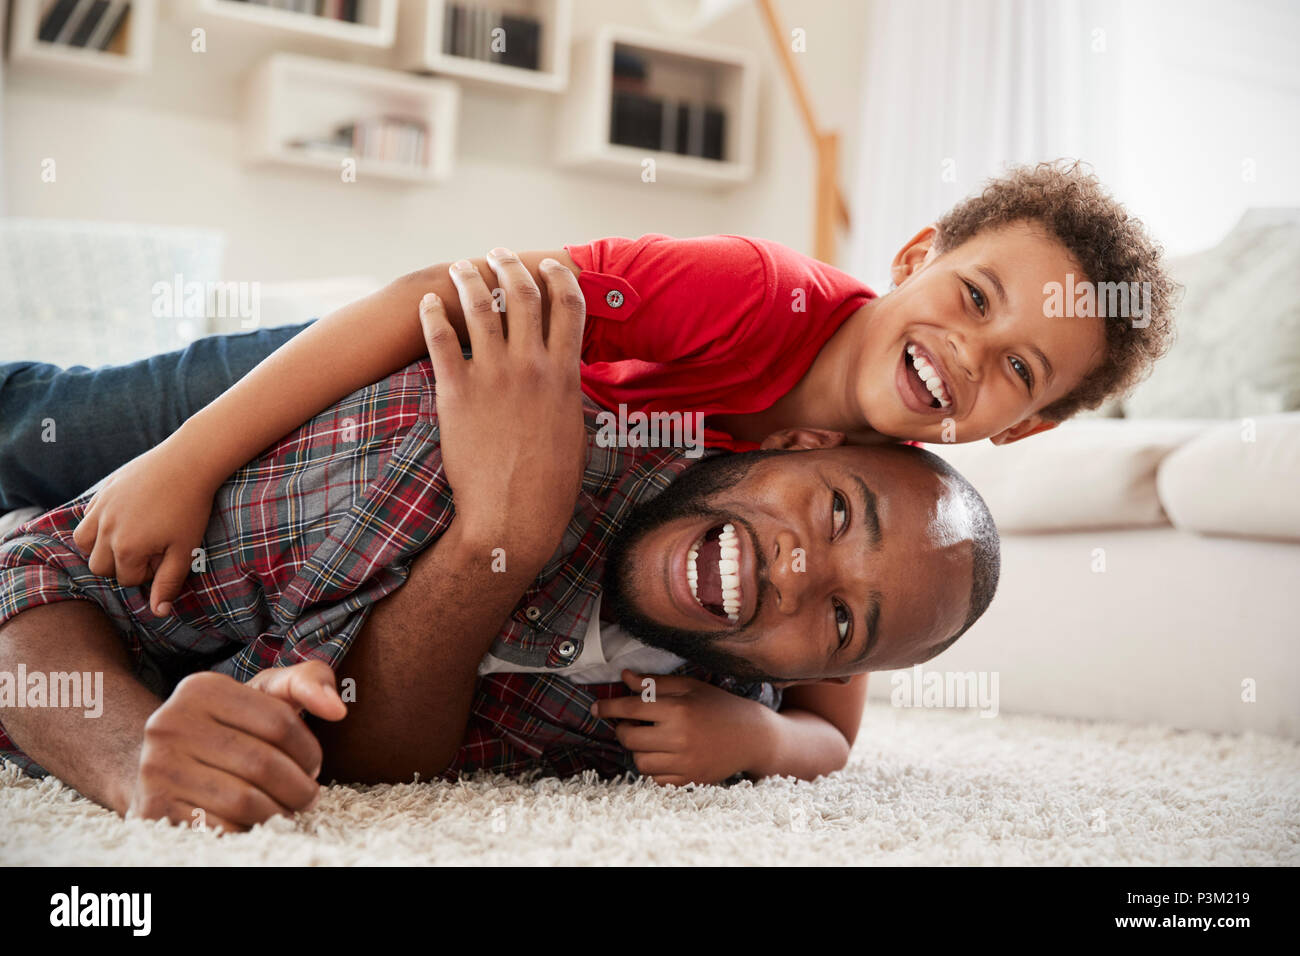 Sohn klettert auf Väter zurück, wie Sie spielen Spiel in der Lounge zusammen Stockfoto